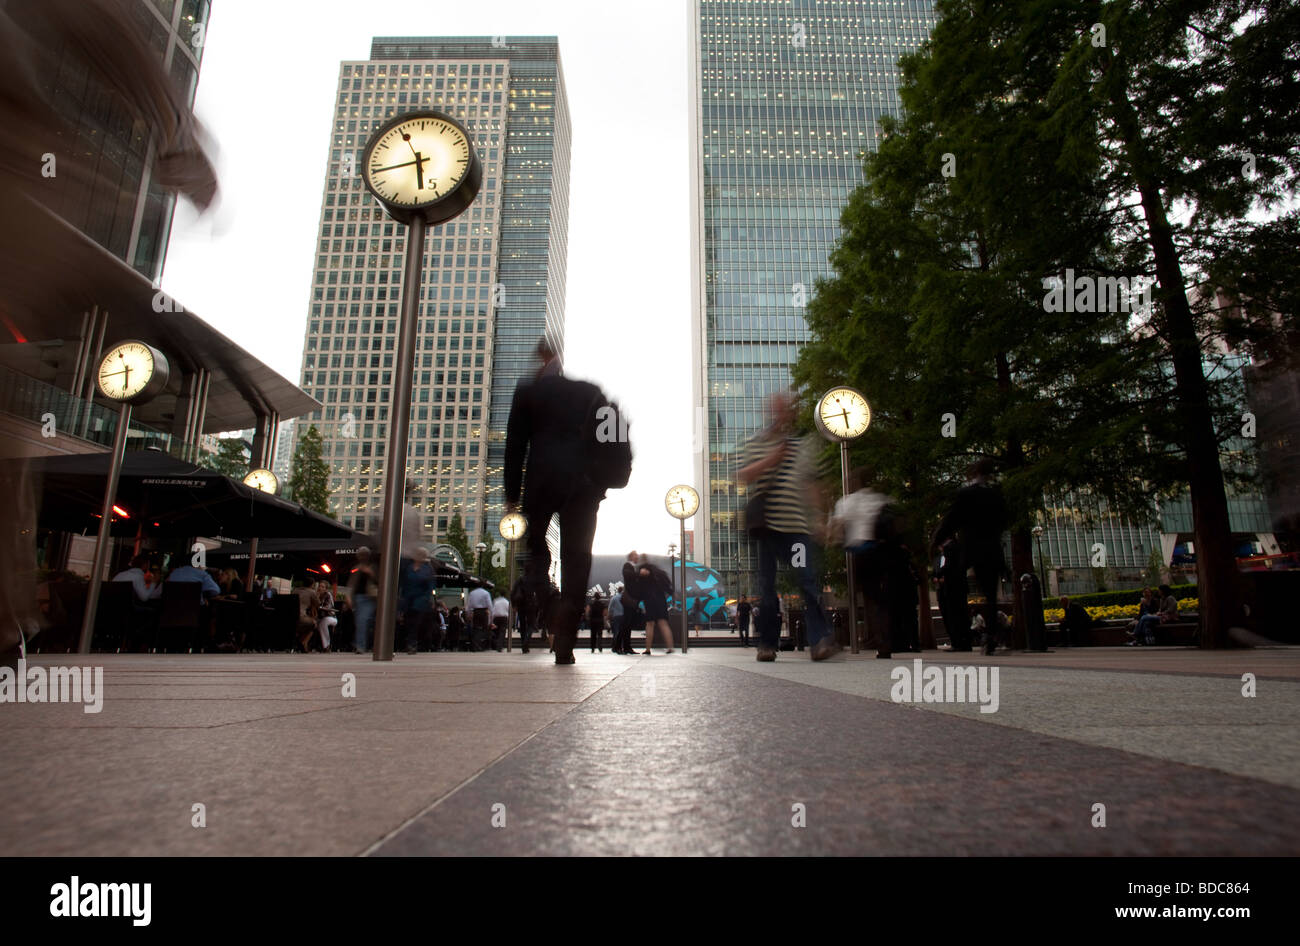 Relojes en financialdistrict Canary Wharf en Londres Foto de stock